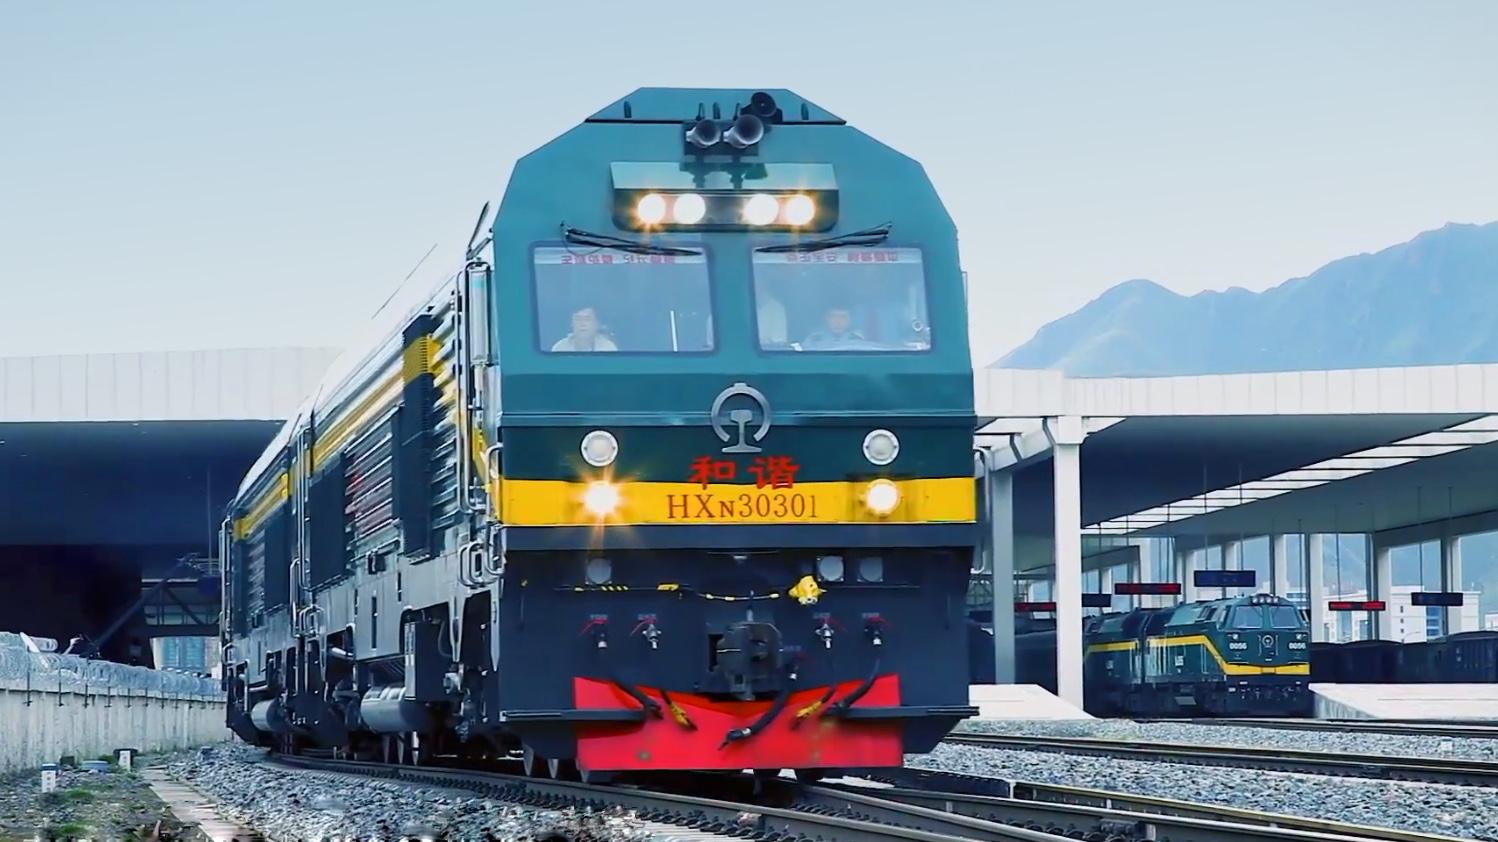 2014年,拉日铁路即将开通运营,为做好高原适应性内燃机车实验,过渡